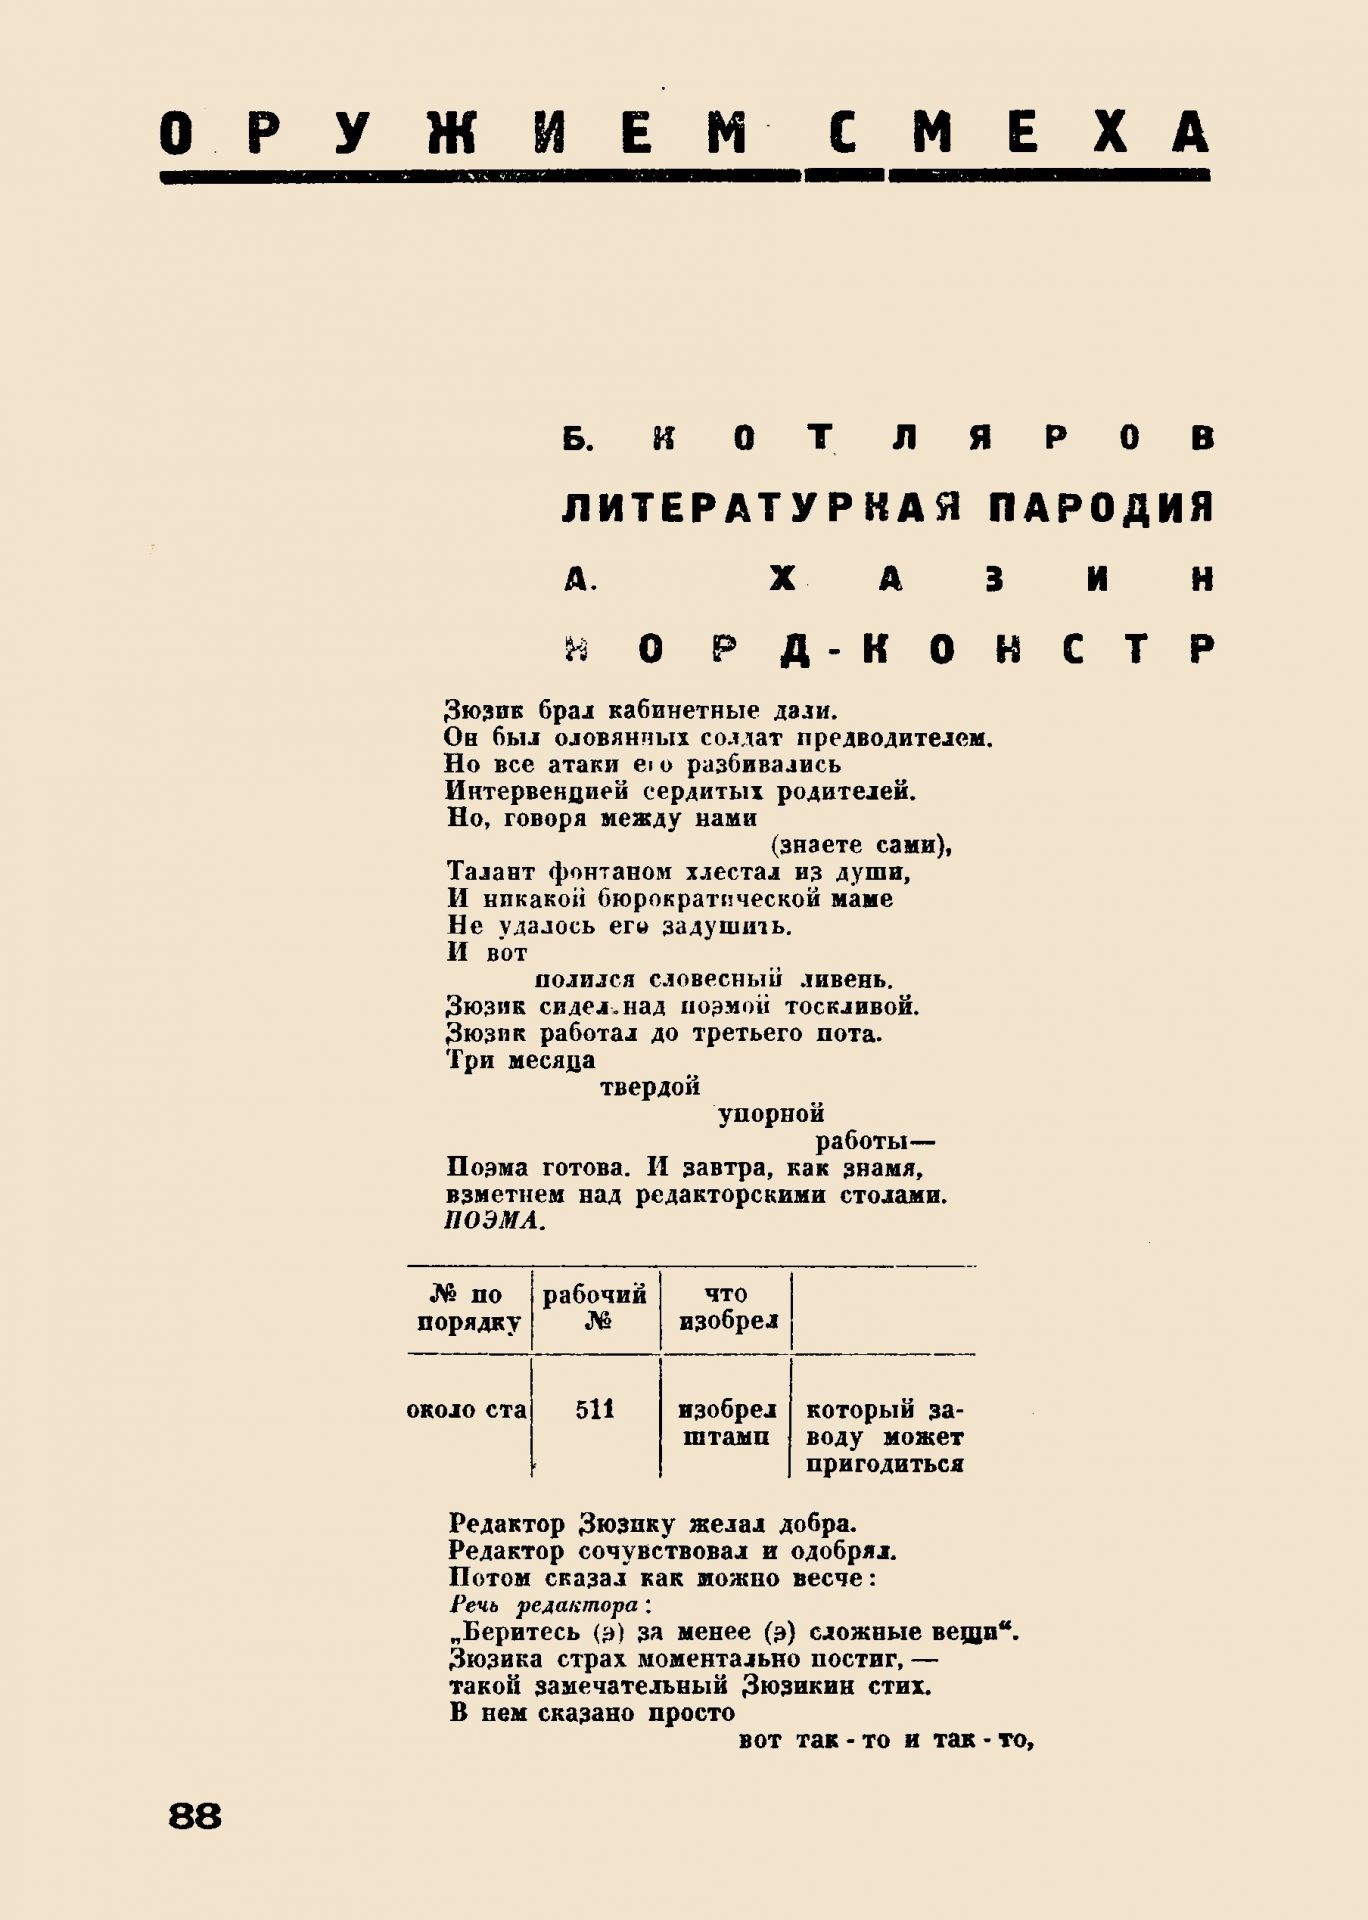 Литстрой, 1933, №5